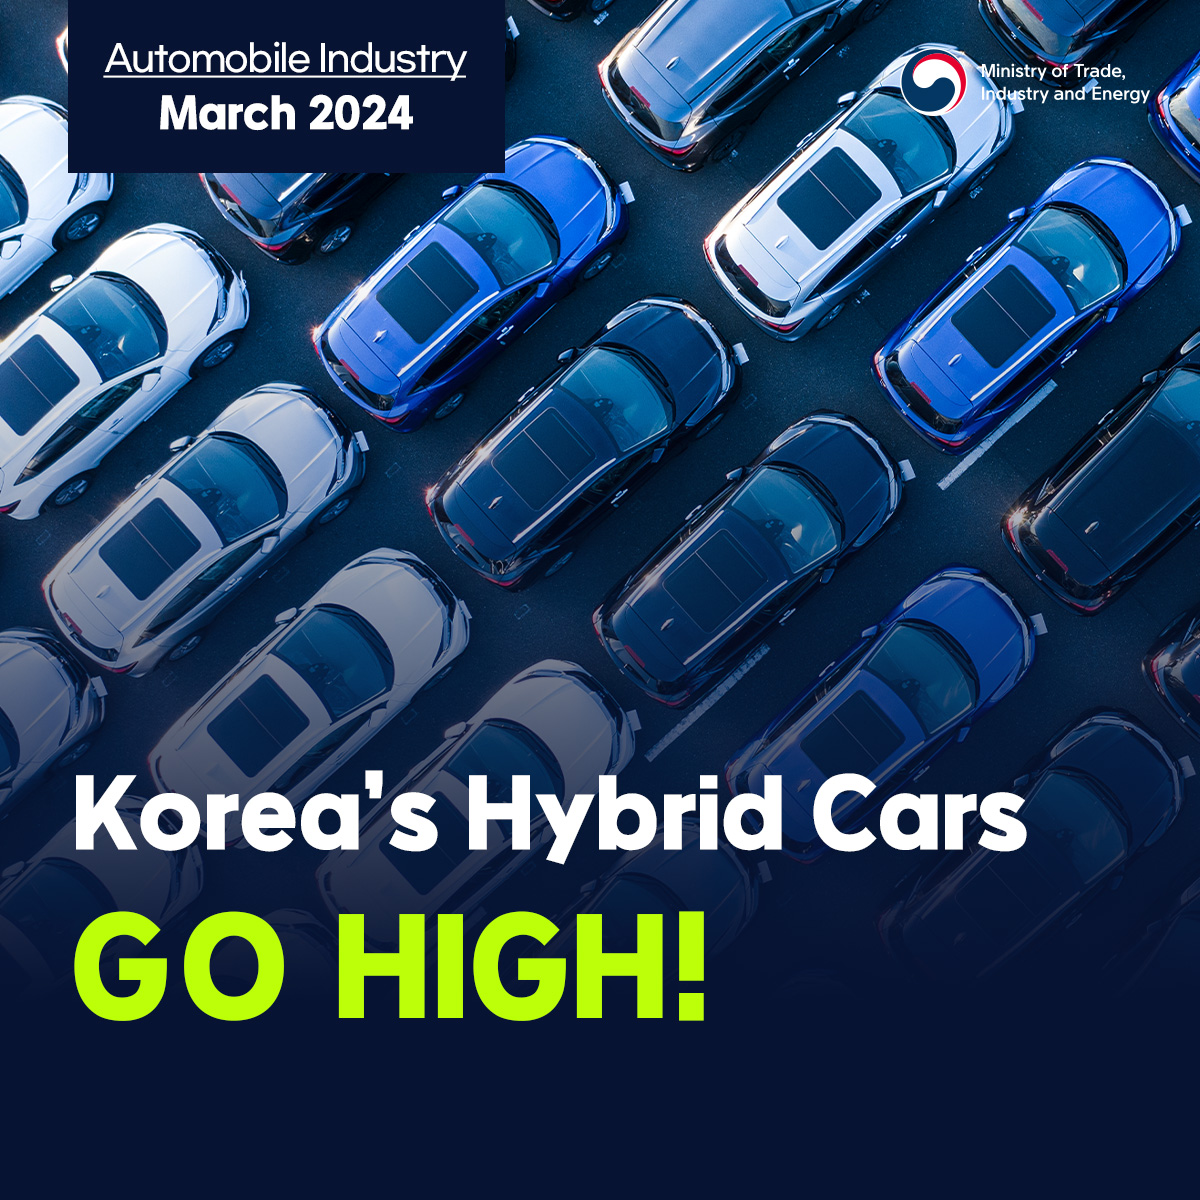 Korea's hybrid car exports GO HIGH!